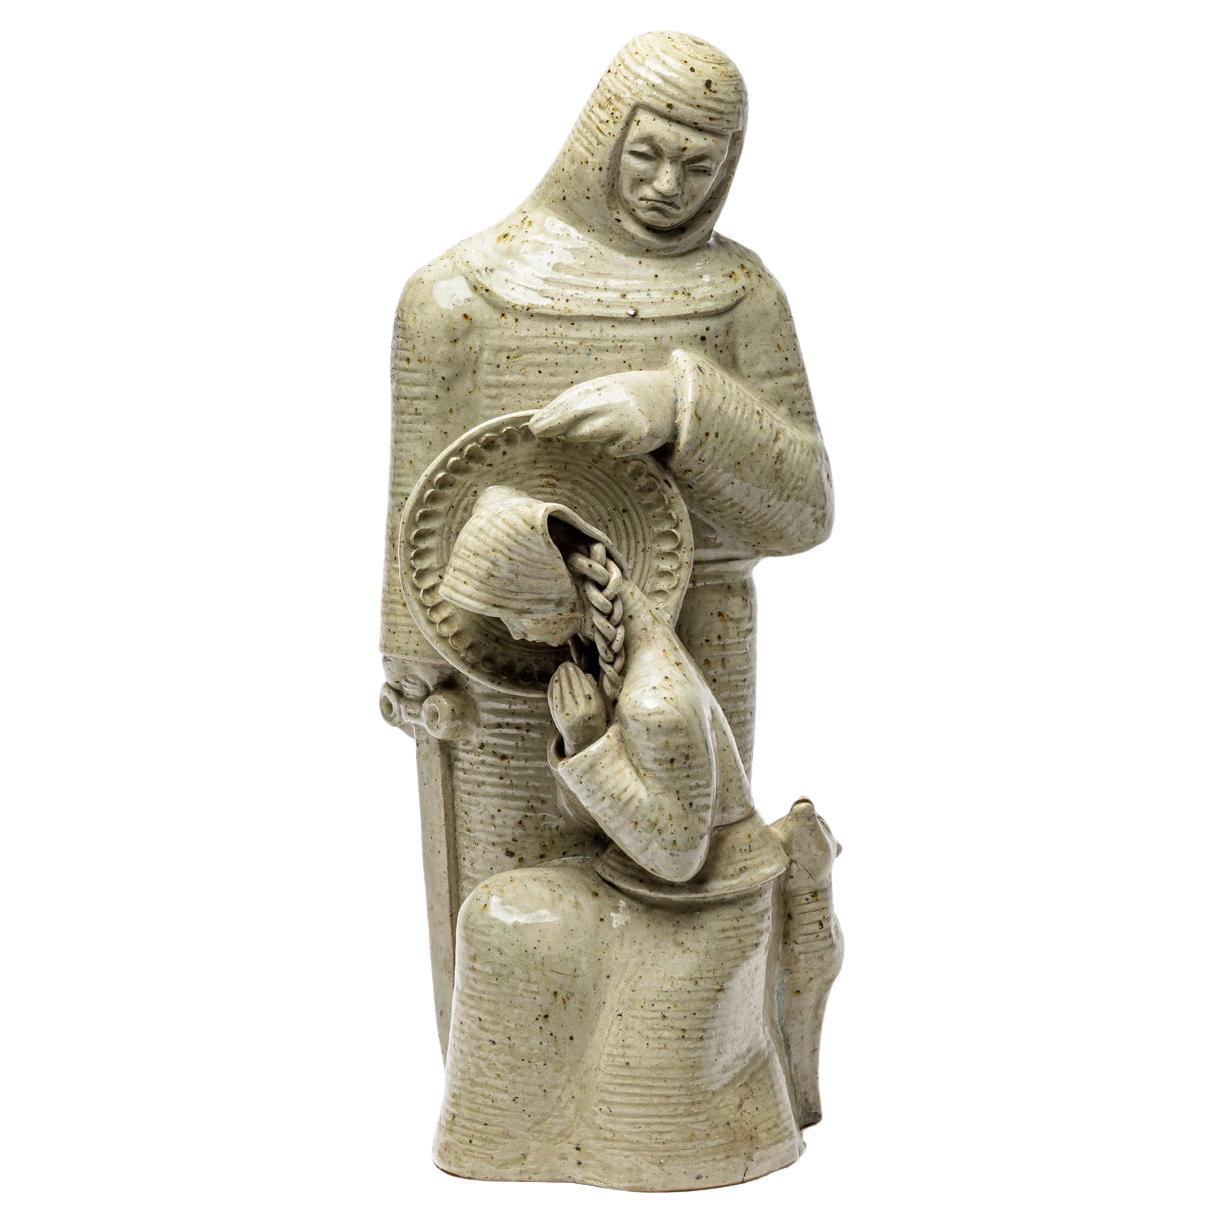 Skulptur der Heiligen Solange oder Saint Soulange aus glasiertem Steingut von André Rozay.